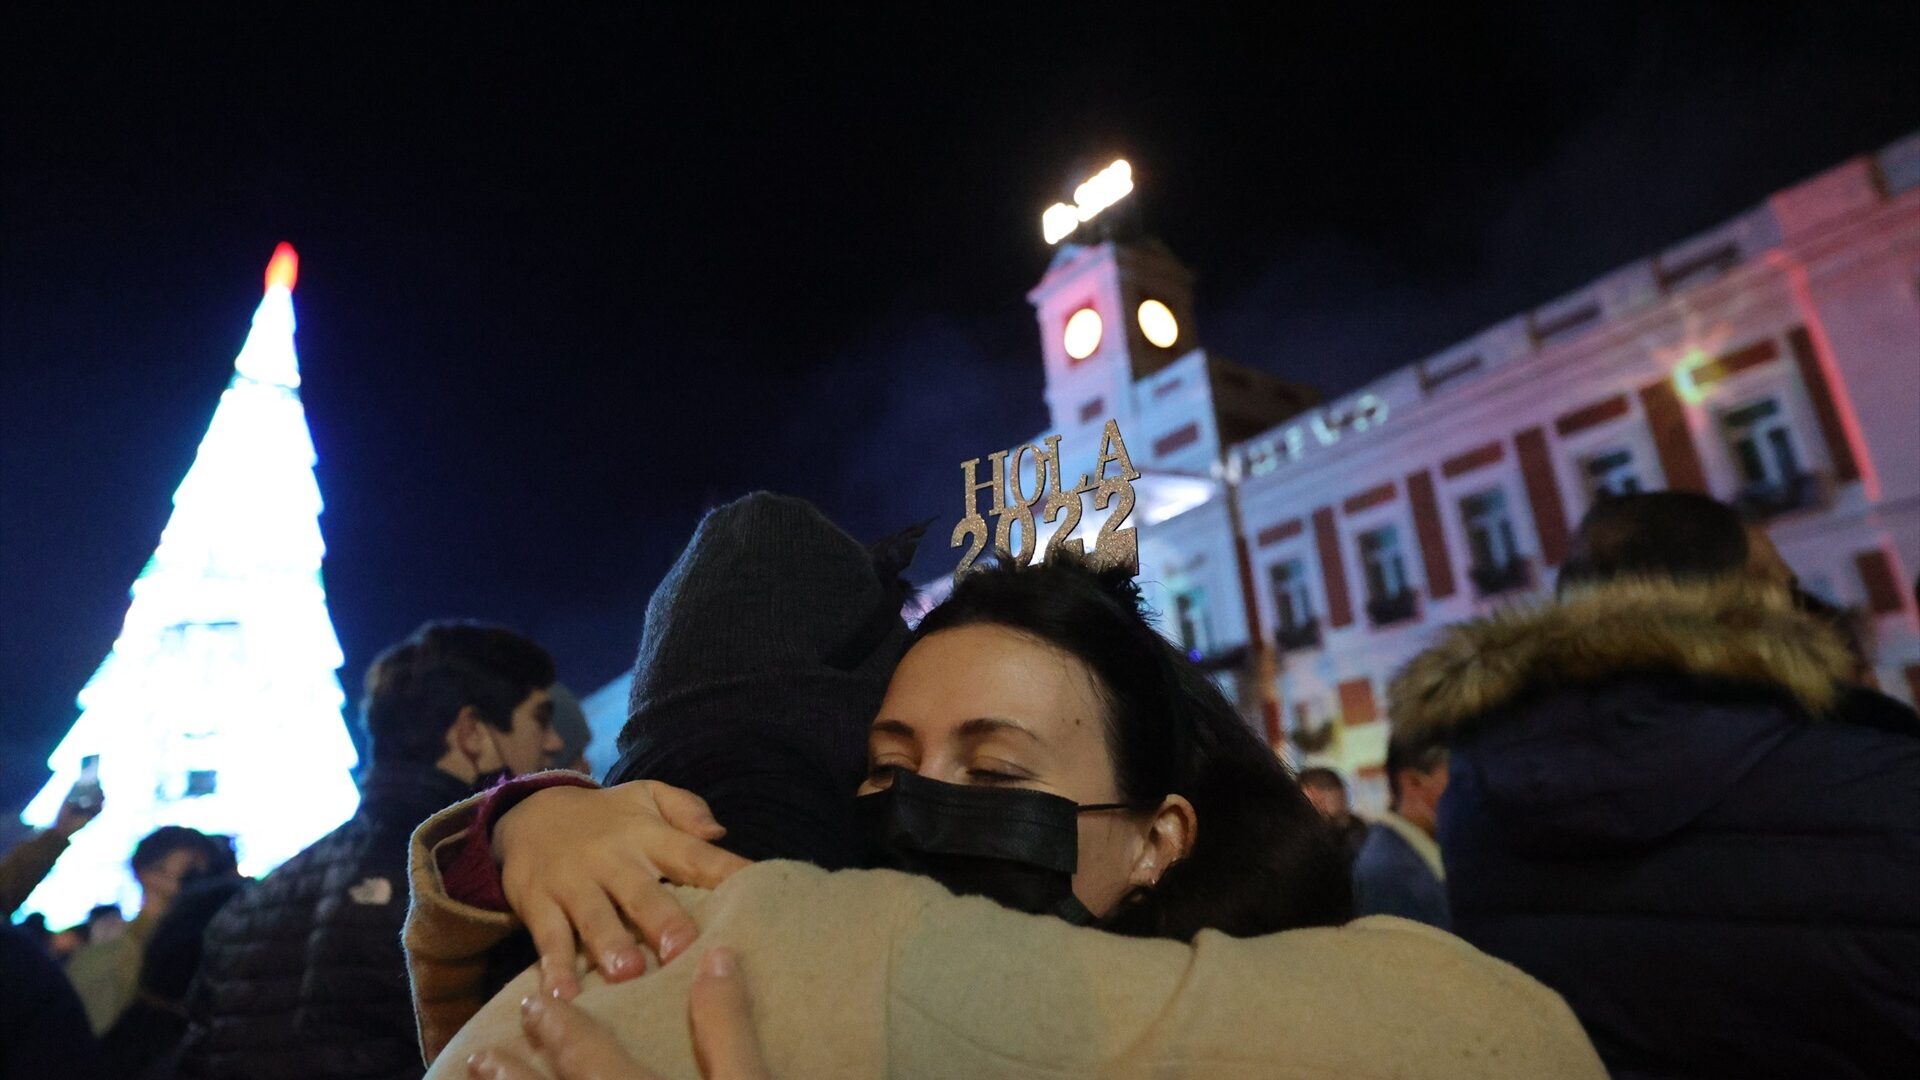 Dos personas se abrazan con la llegada del año 2022 en las Campanadas de Nochevieja, en la Puerta del Sol